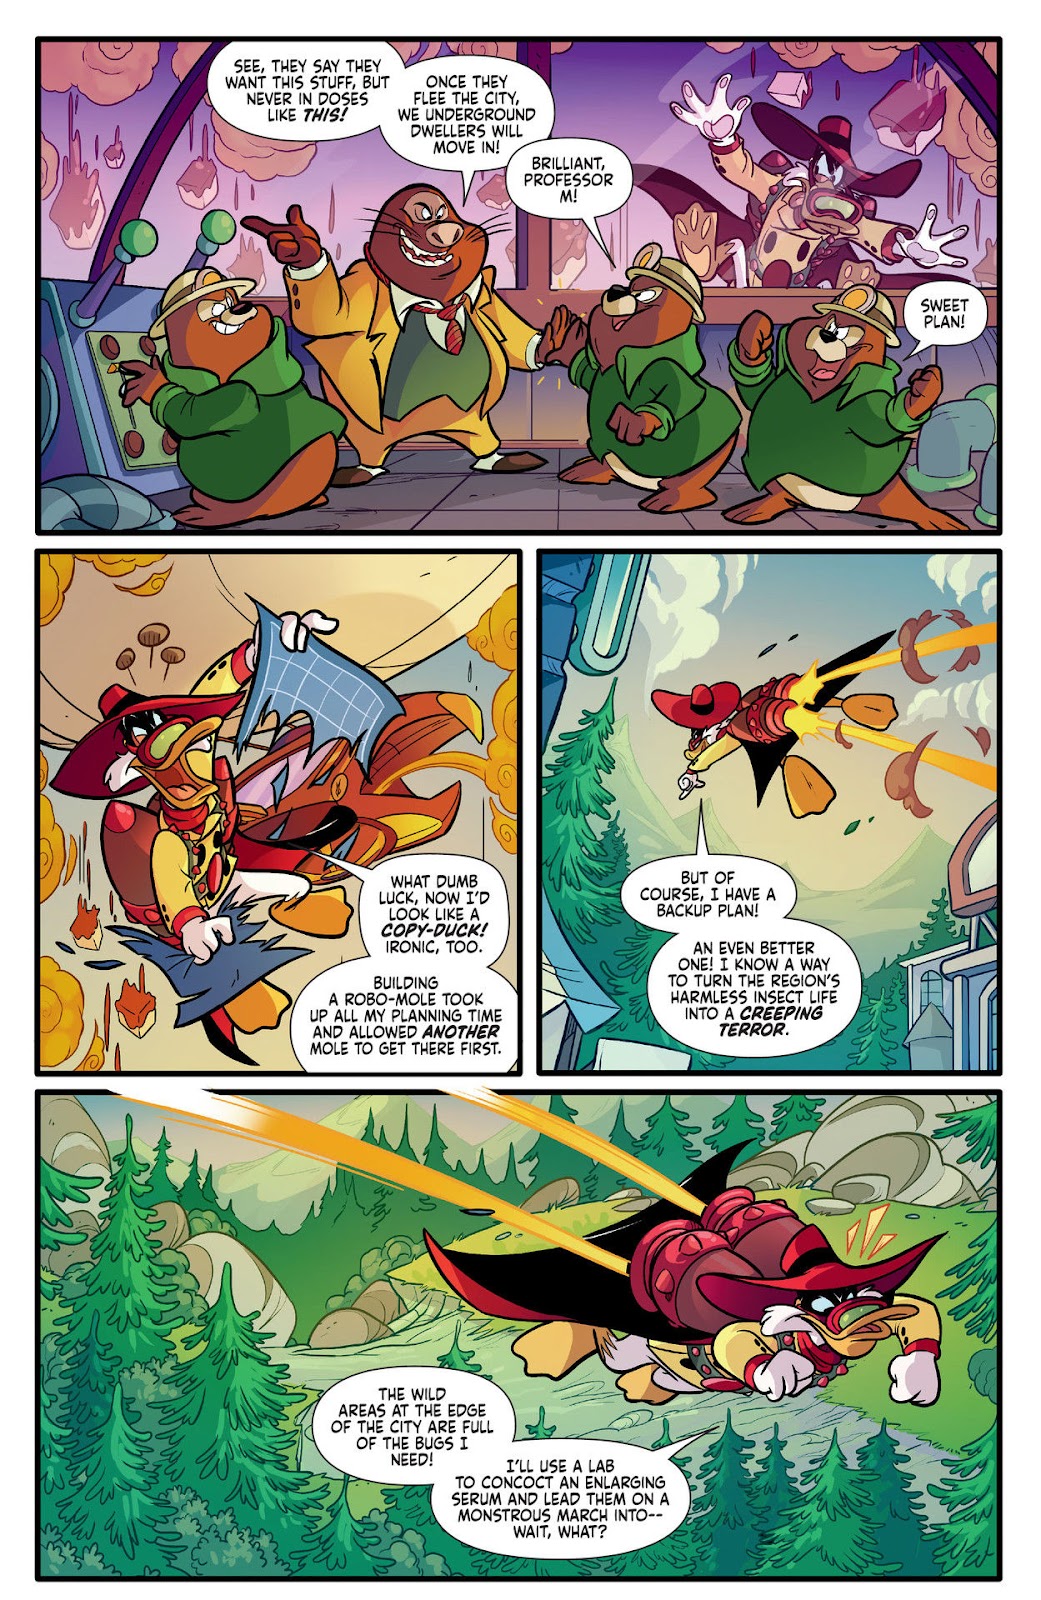 Darkwing Duck: Negaduck issue 1 - Page 15